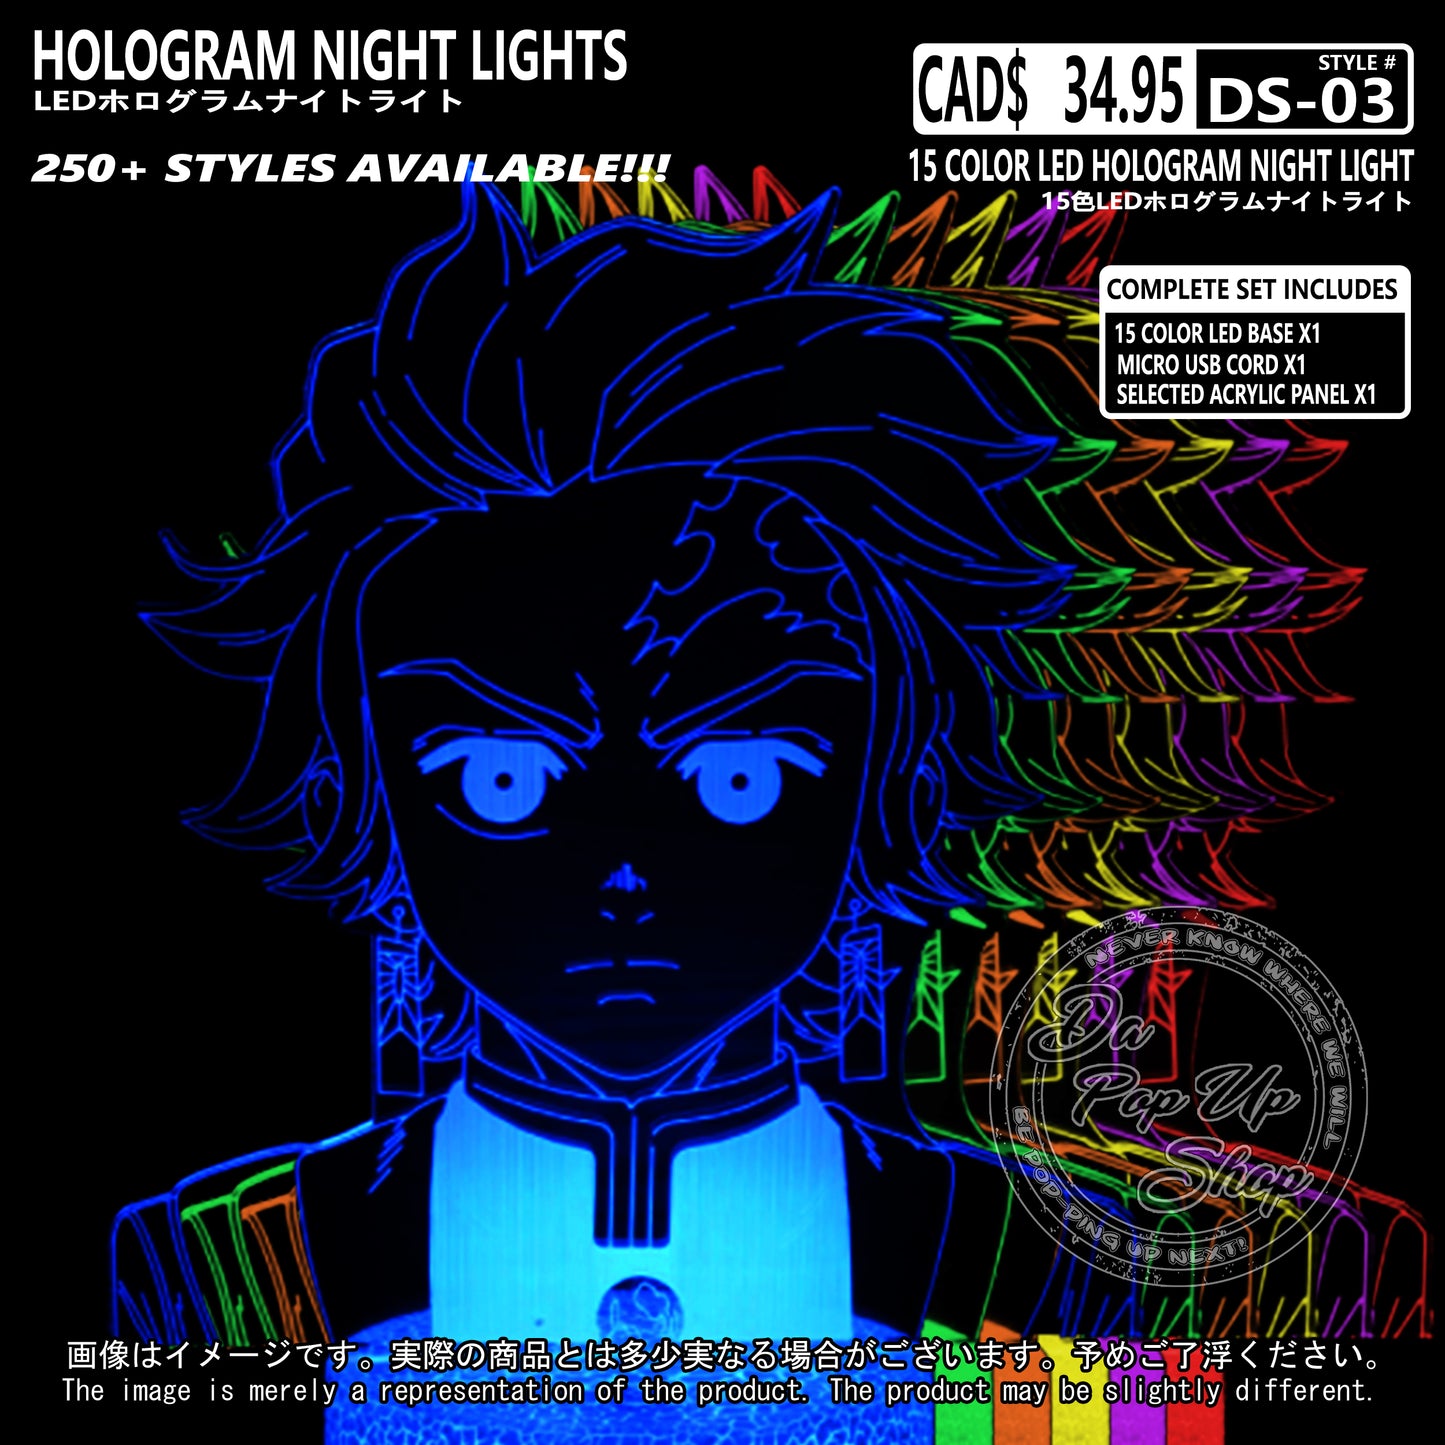 (DS-03) Demon Slayer Hologram LED Night Light